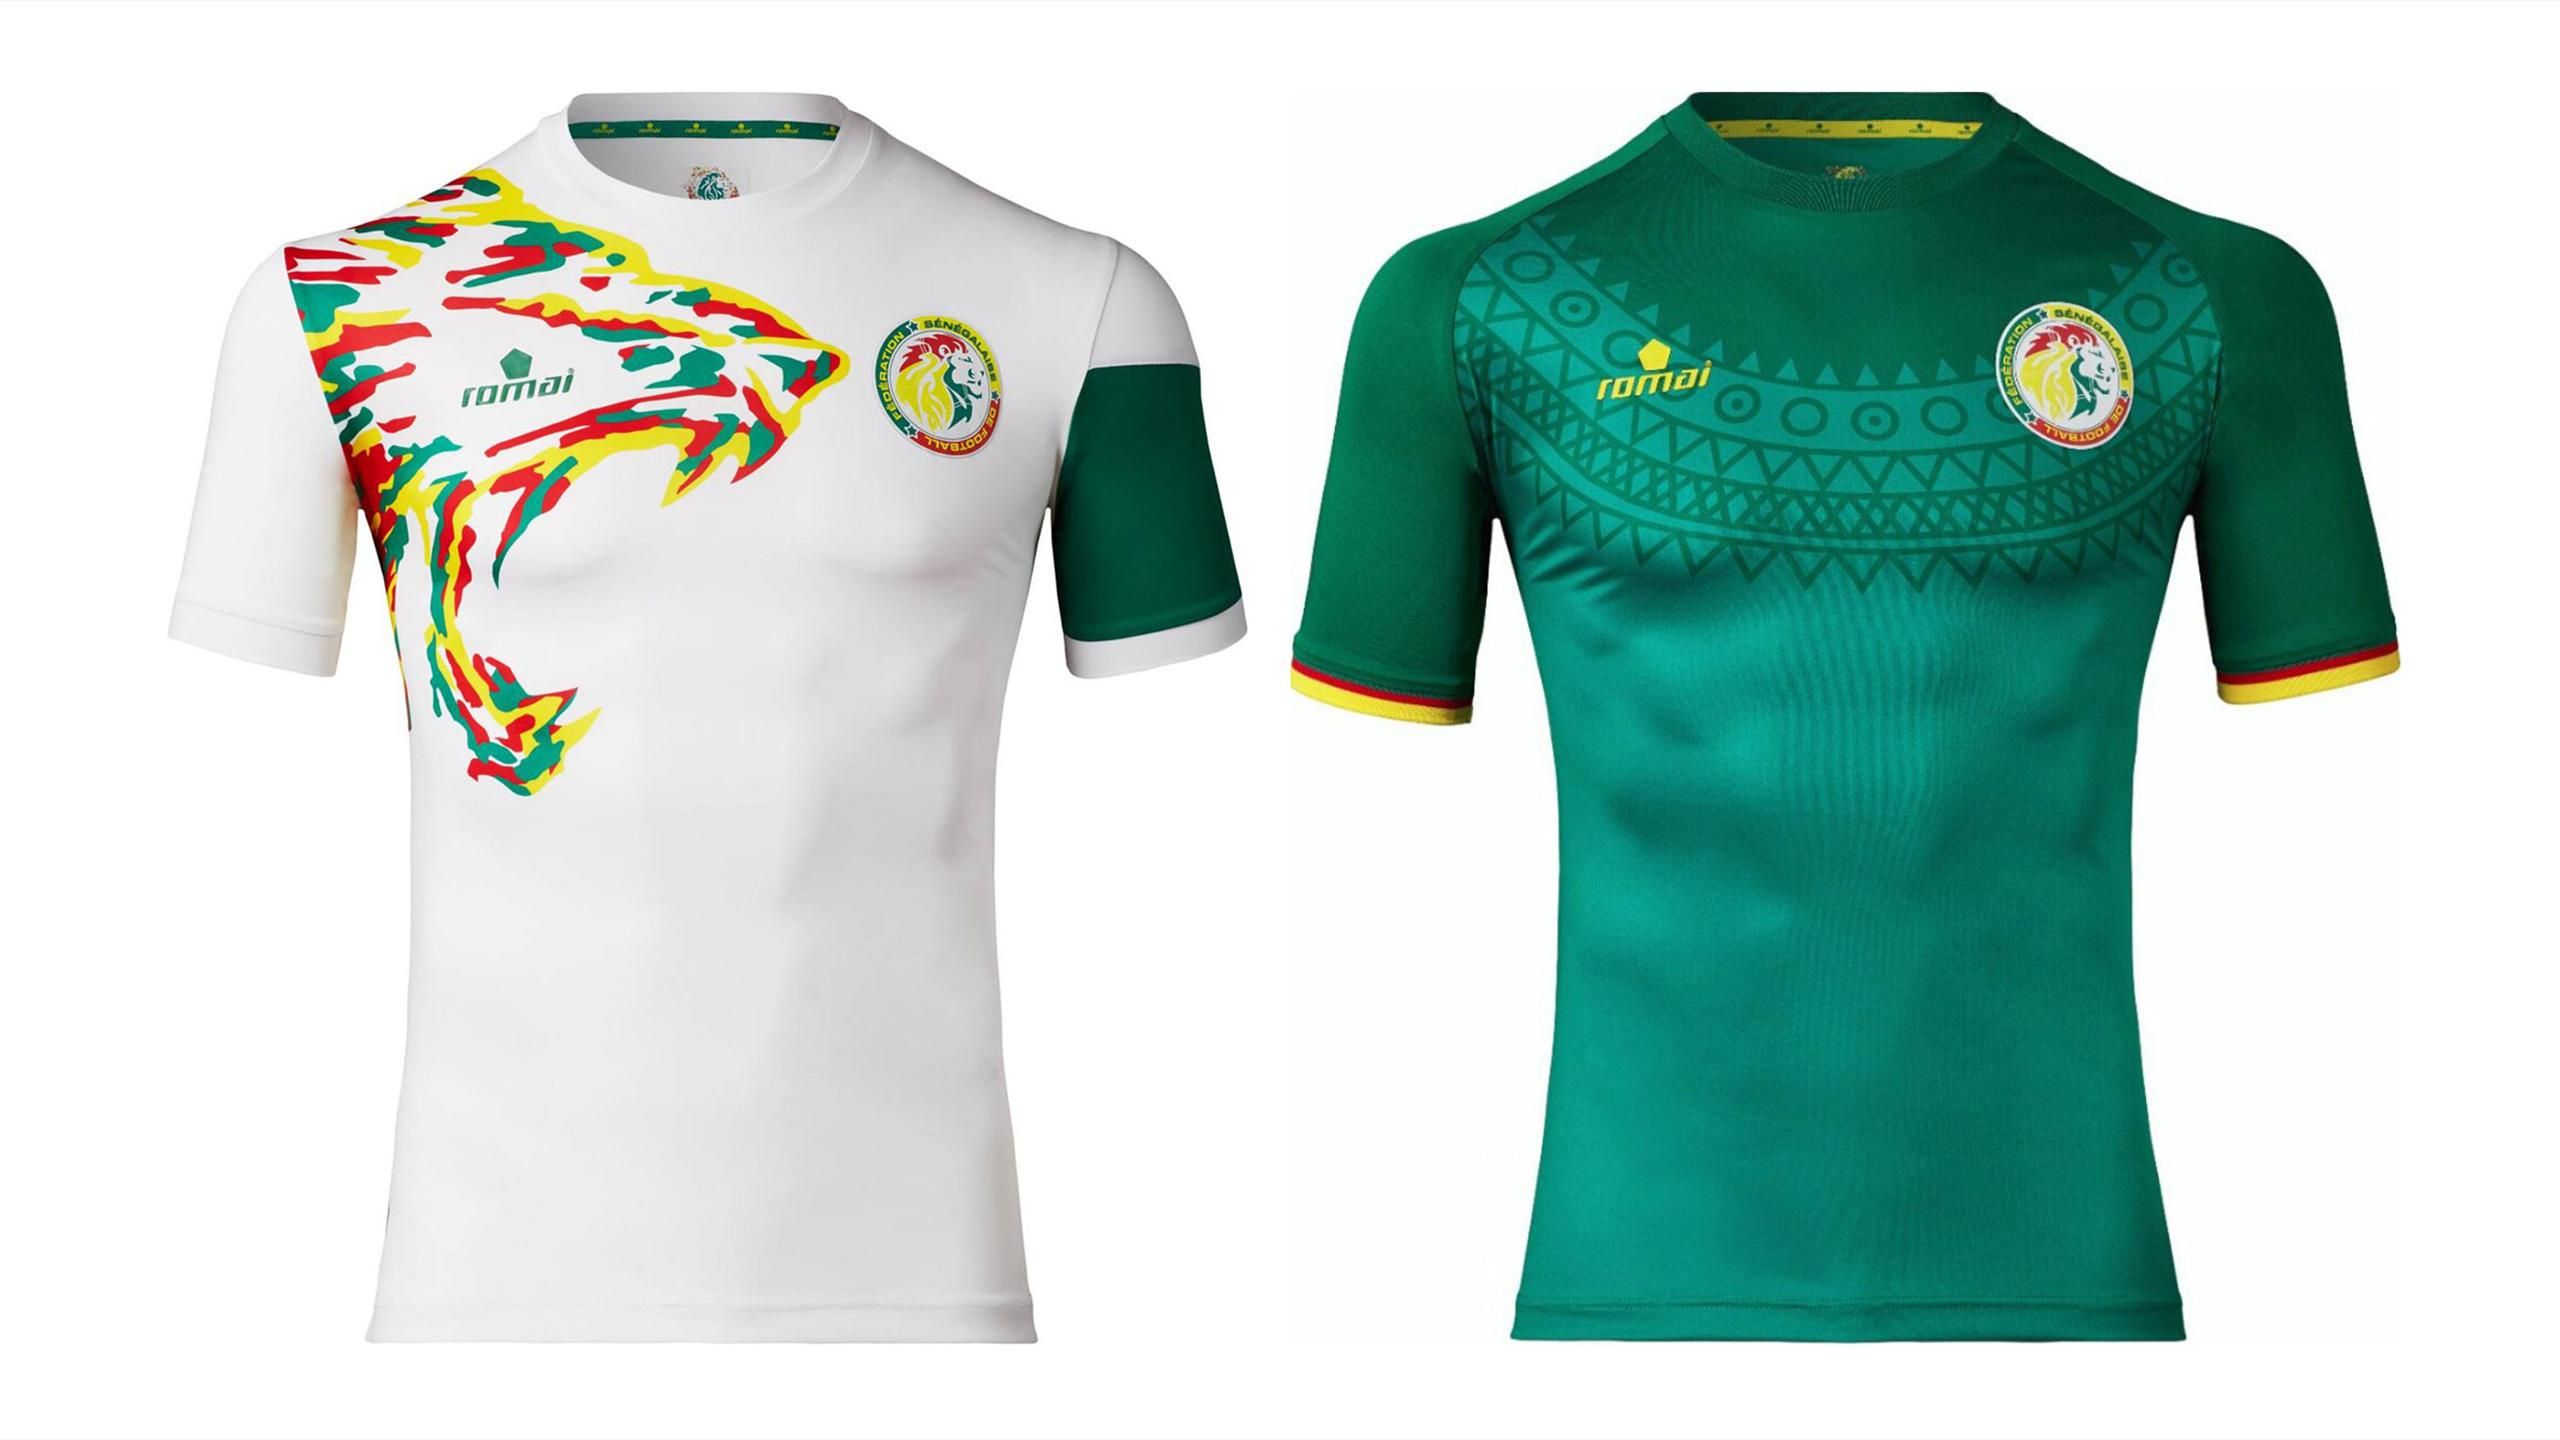 Le Sénégal aura deux superbes maillots pour la CAN - Eurosport